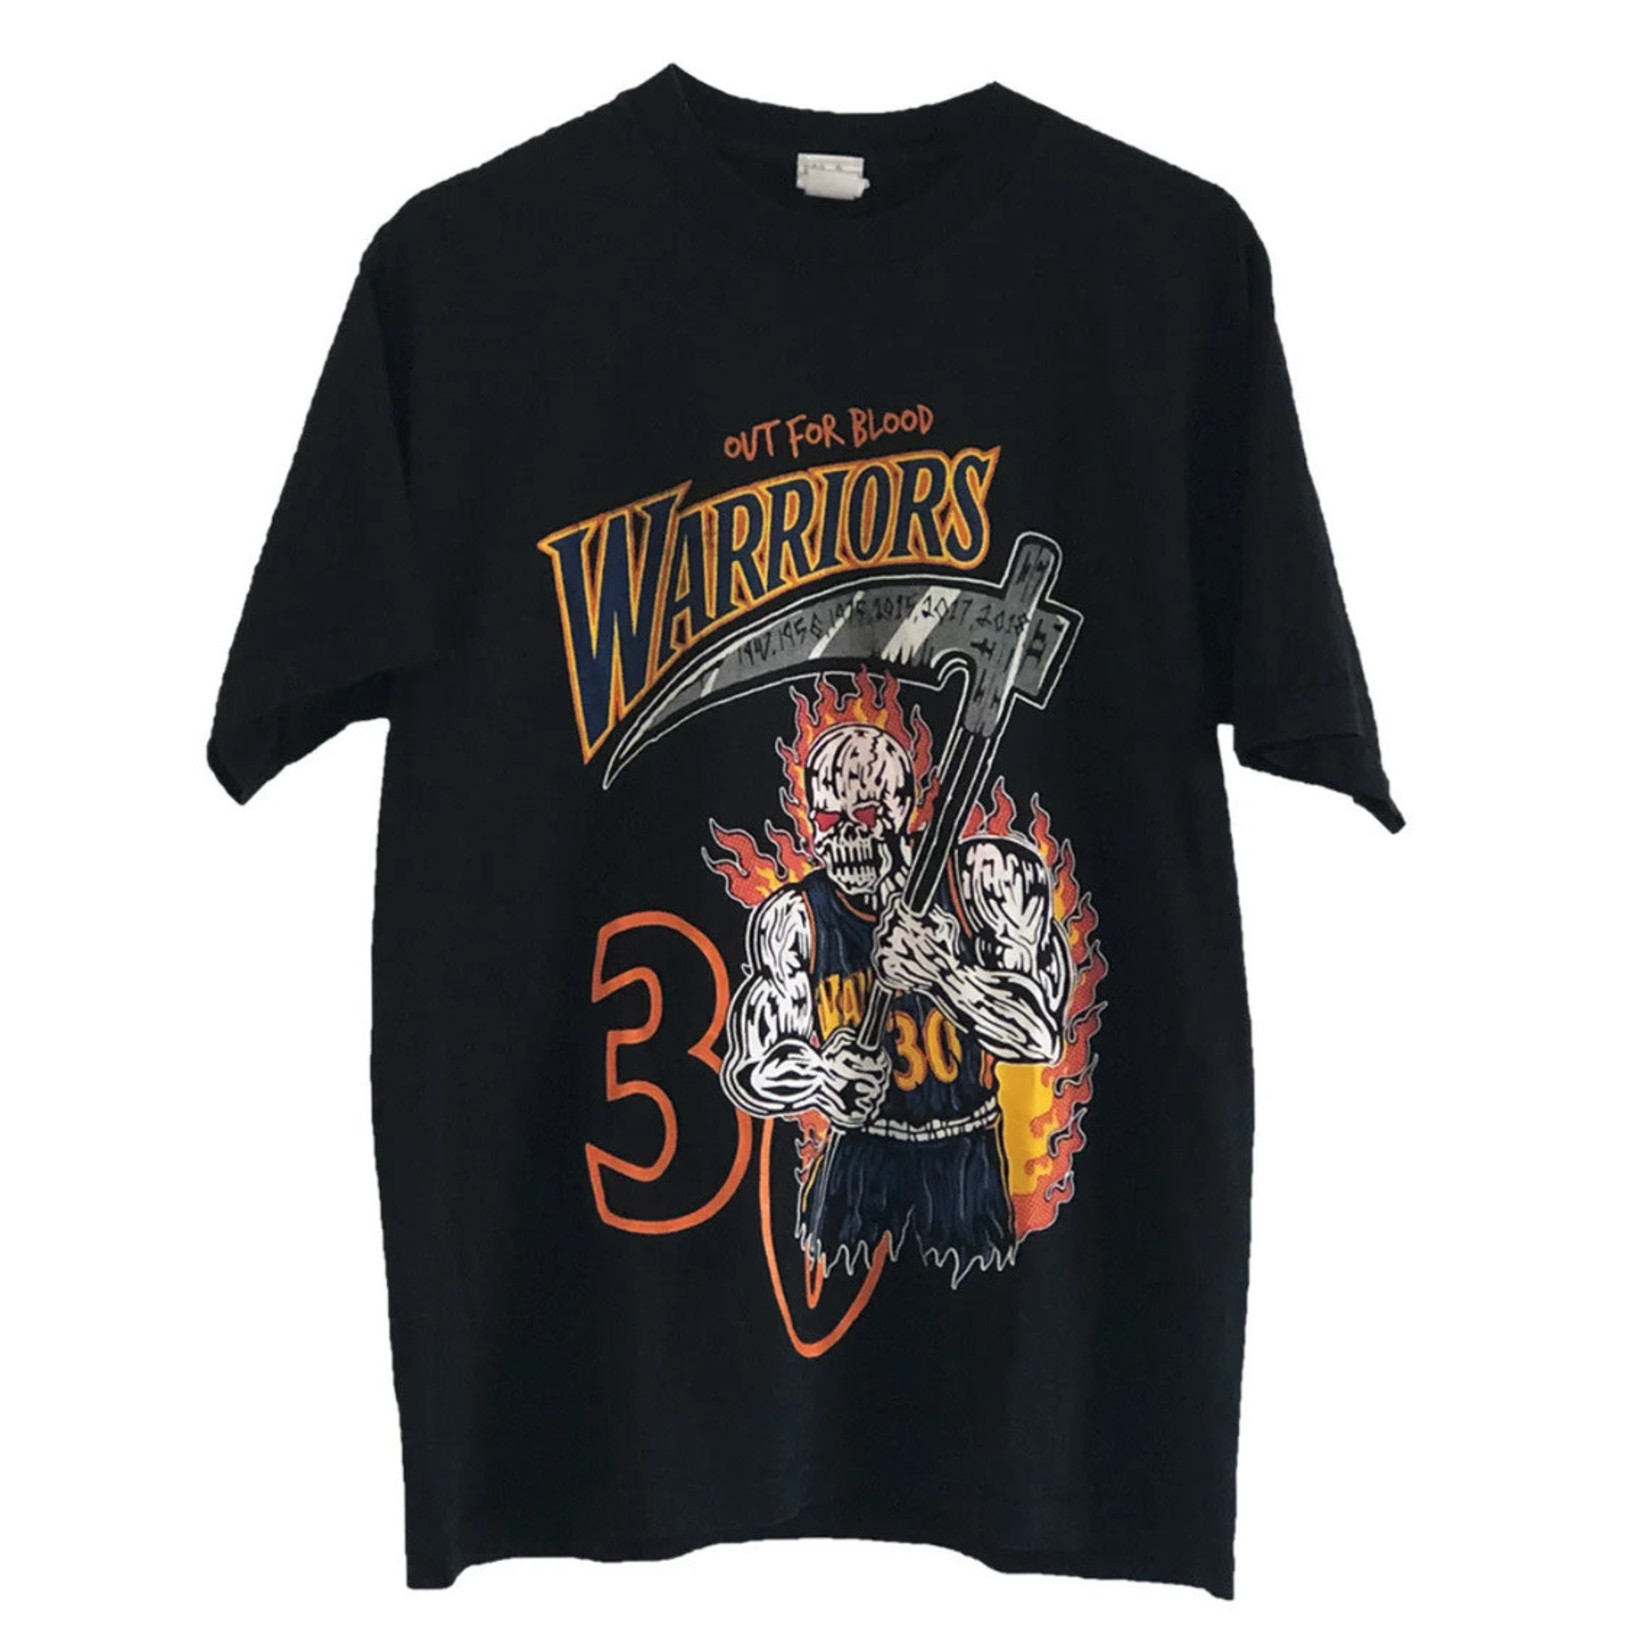 Warren Warren Lotas Tee Warriors Curry Size Medium, DS BRAND NEW